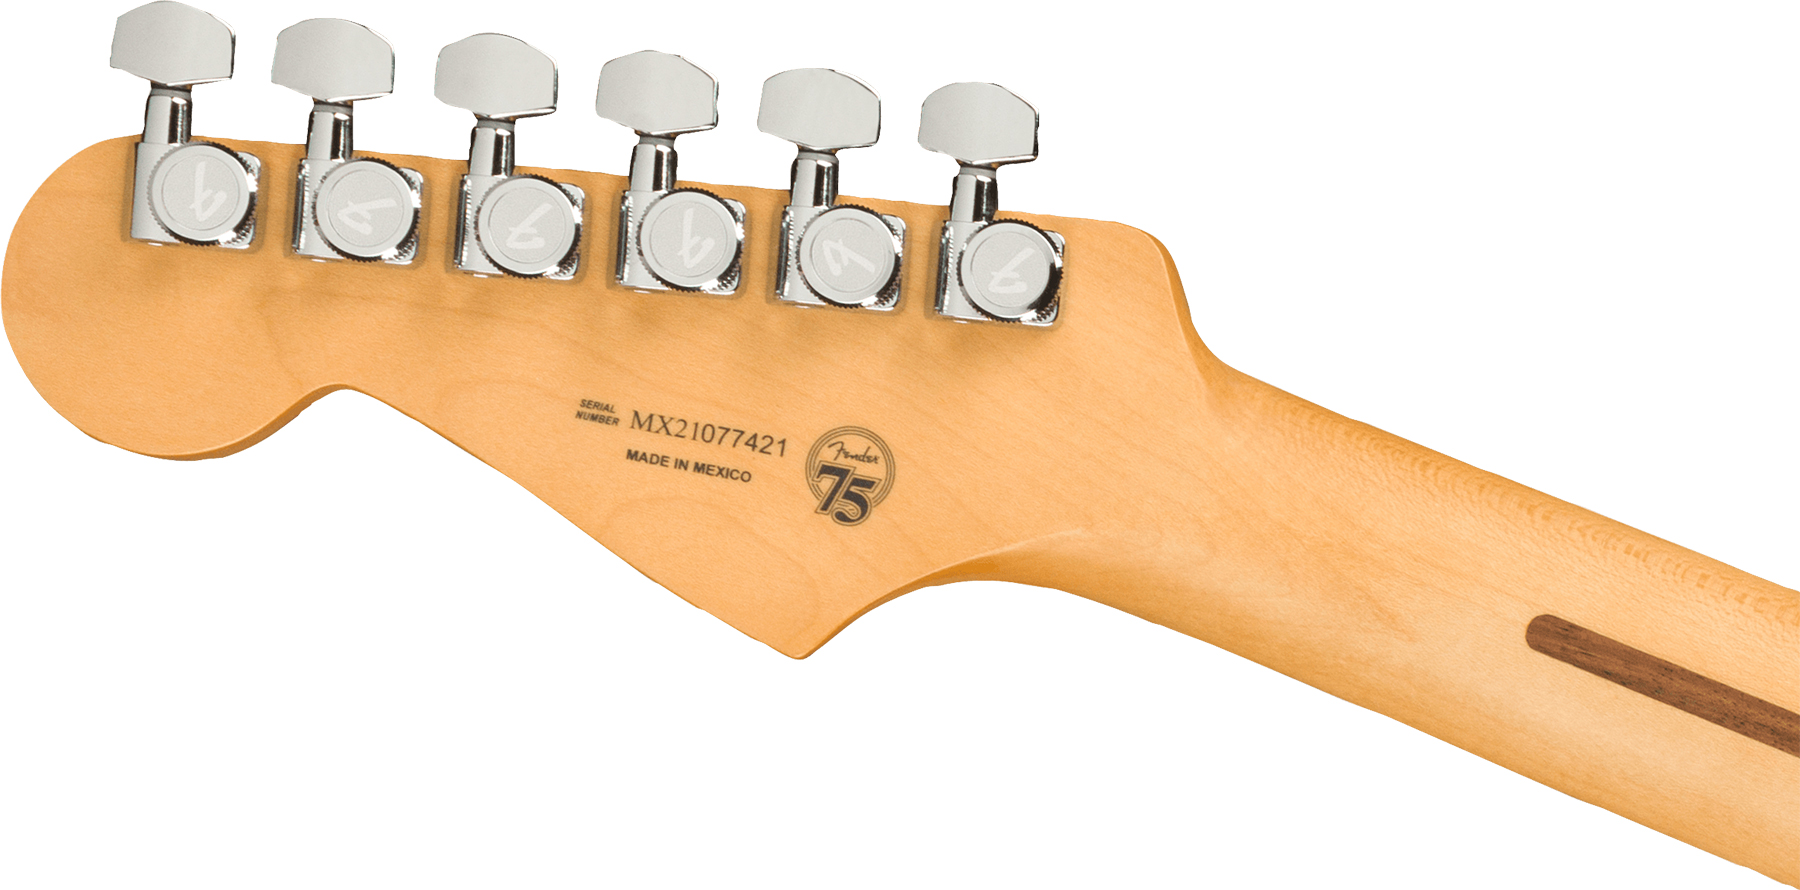 Fender Strat Player Plus Mex Hss Trem Pf - Belair Blue - Guitare Électrique Forme Str - Variation 3